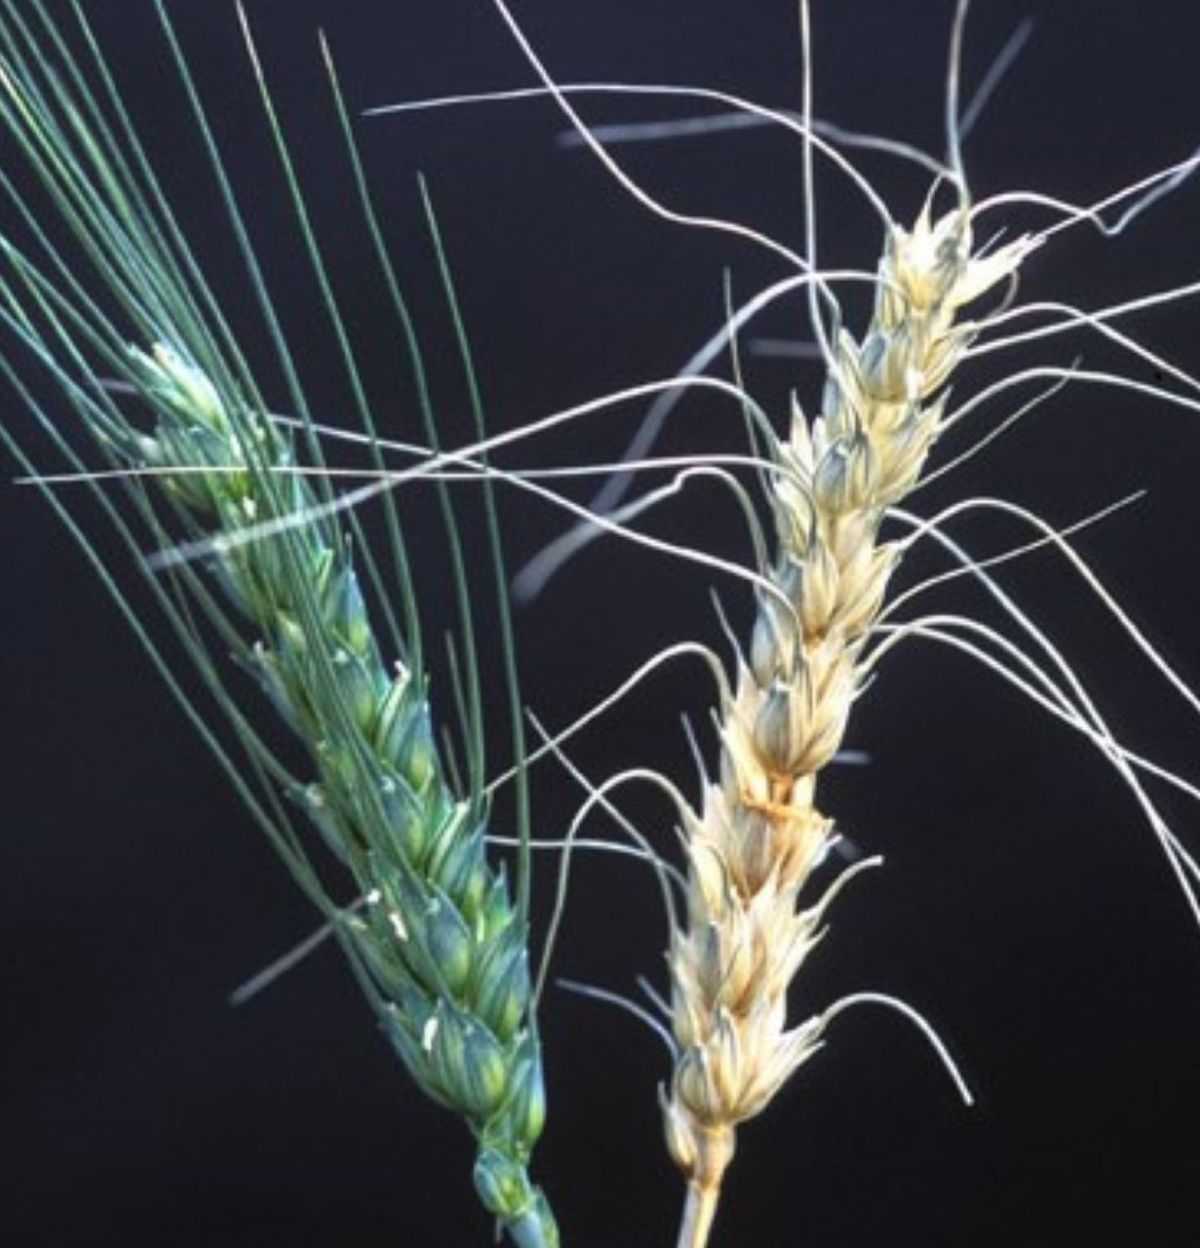 RNAs sollen chemische Pflanzenschutzmittel ersetzen, um Pilzkrankheiten wie Fusariosen nachhaltig zu bekämpfen. Hier im Bild: Eine gesunde Getreide-Ähre (links) im Vergleich mit einer von Fusarium graminearum befallenen Pflanze (rechts). (Bildquelle: © Wi